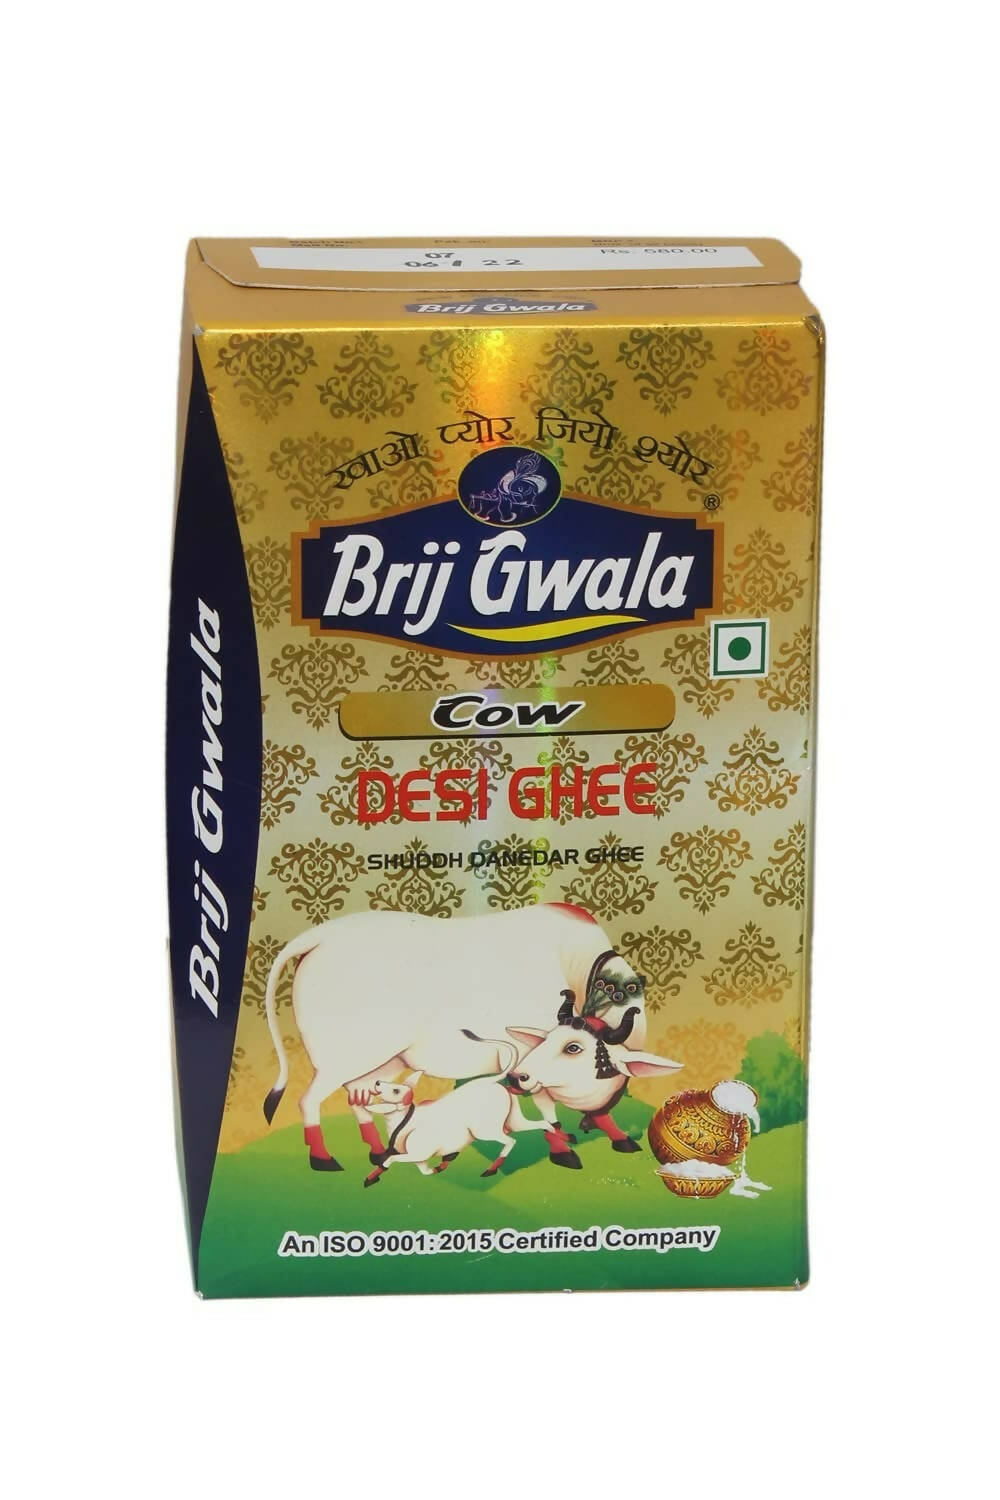 Brij Gwala Desi Cow Ghee - Distacart